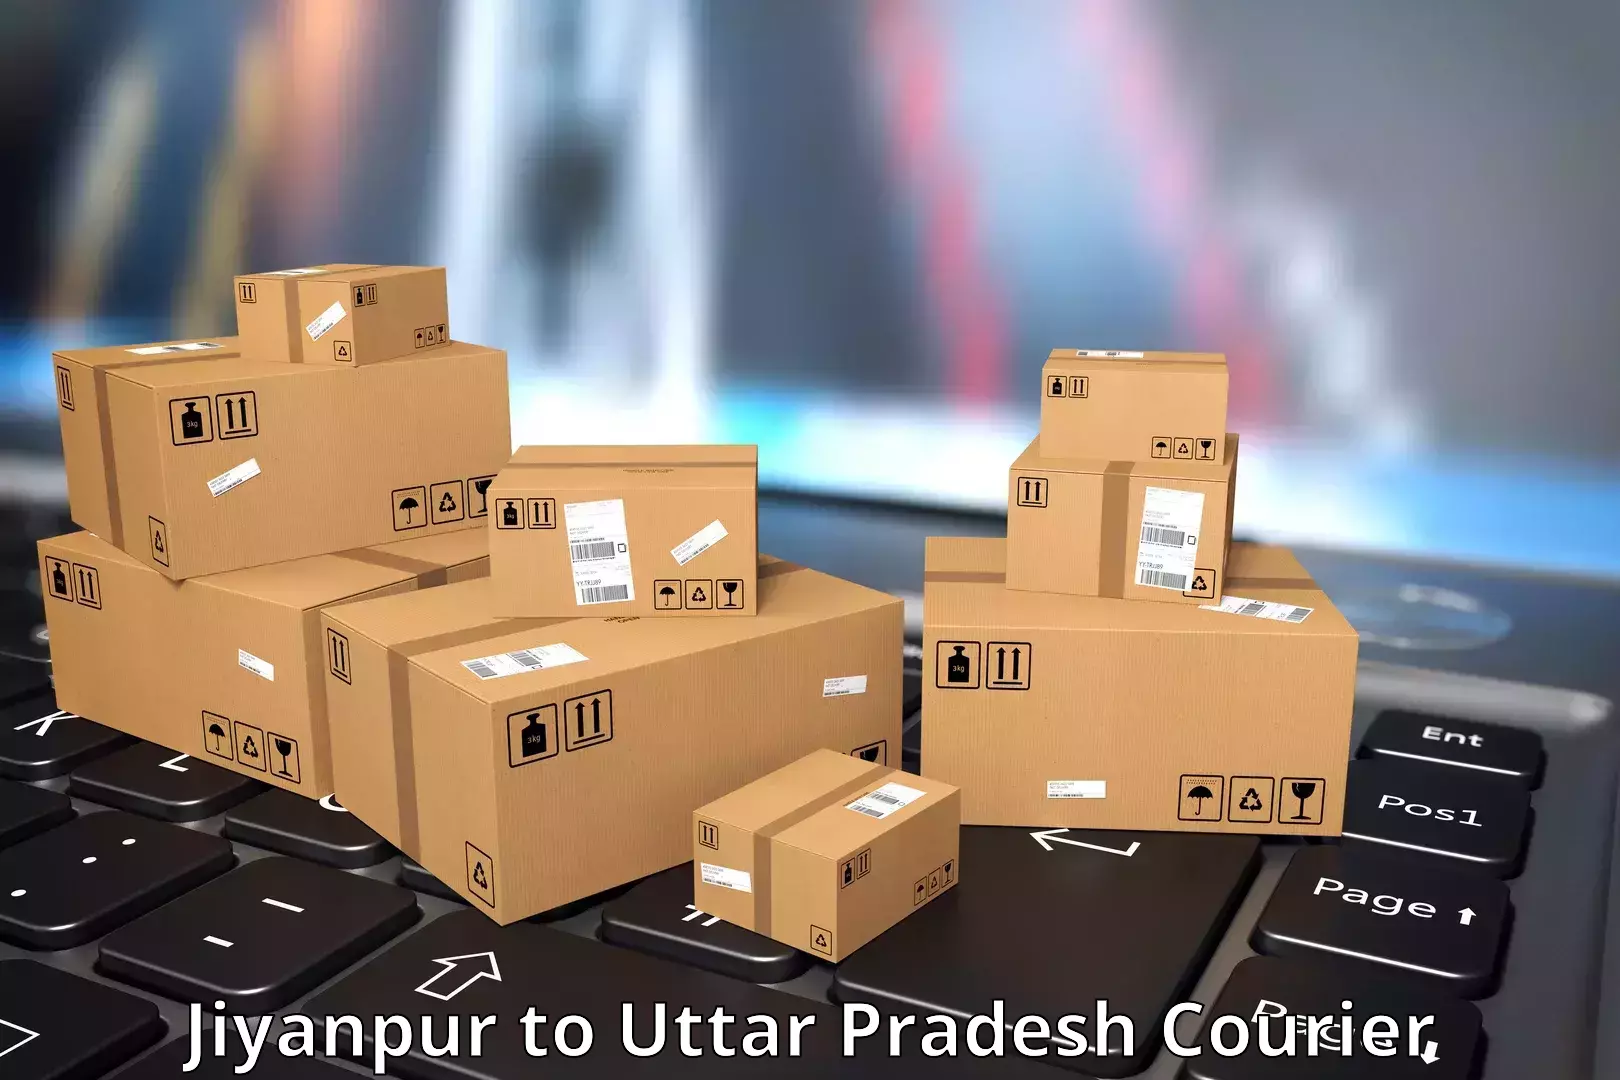 Courier service efficiency Jiyanpur to Uttar Pradesh